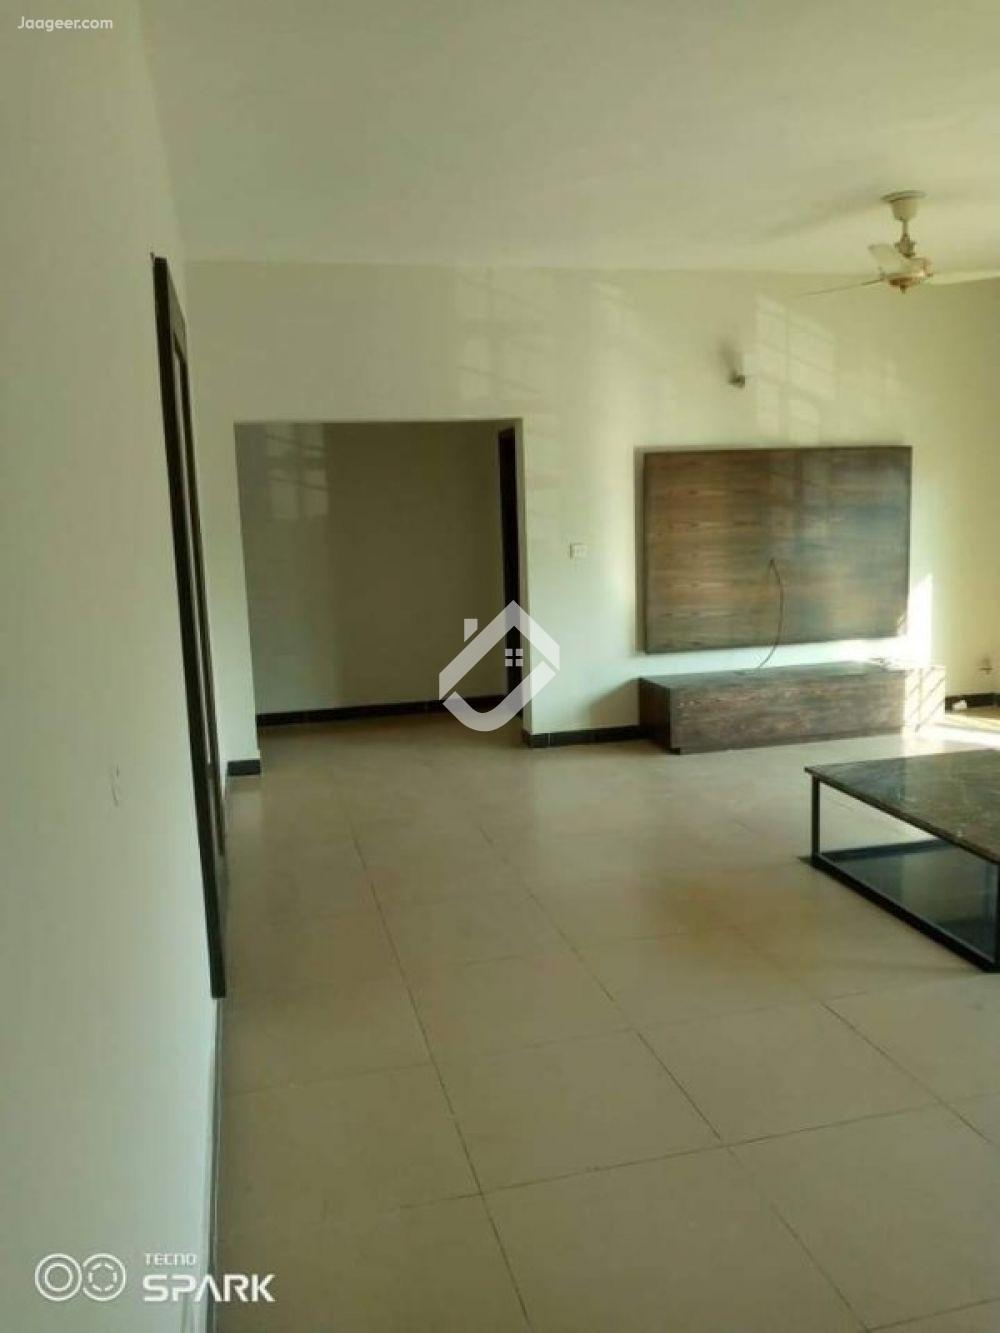 View  3 Bed Beautiful Apartment Is Available For Rent In Askari 11 in Askari 11, Lahore